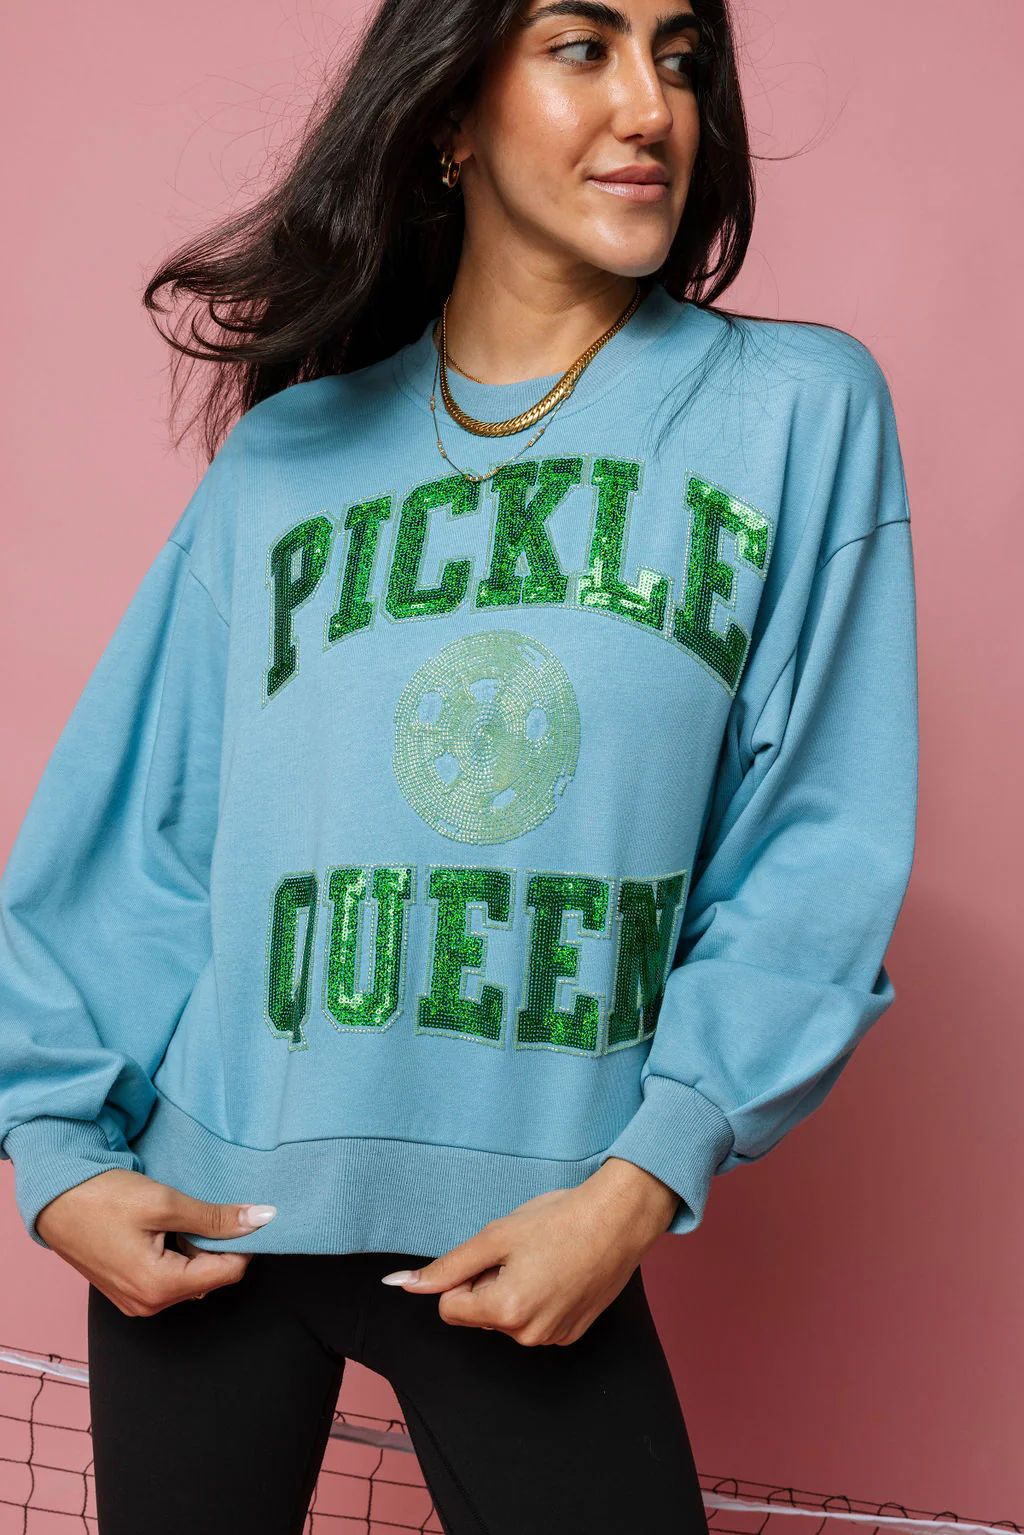 Aqua Pickle Queen Sweatshirt | Queen of Sparkles